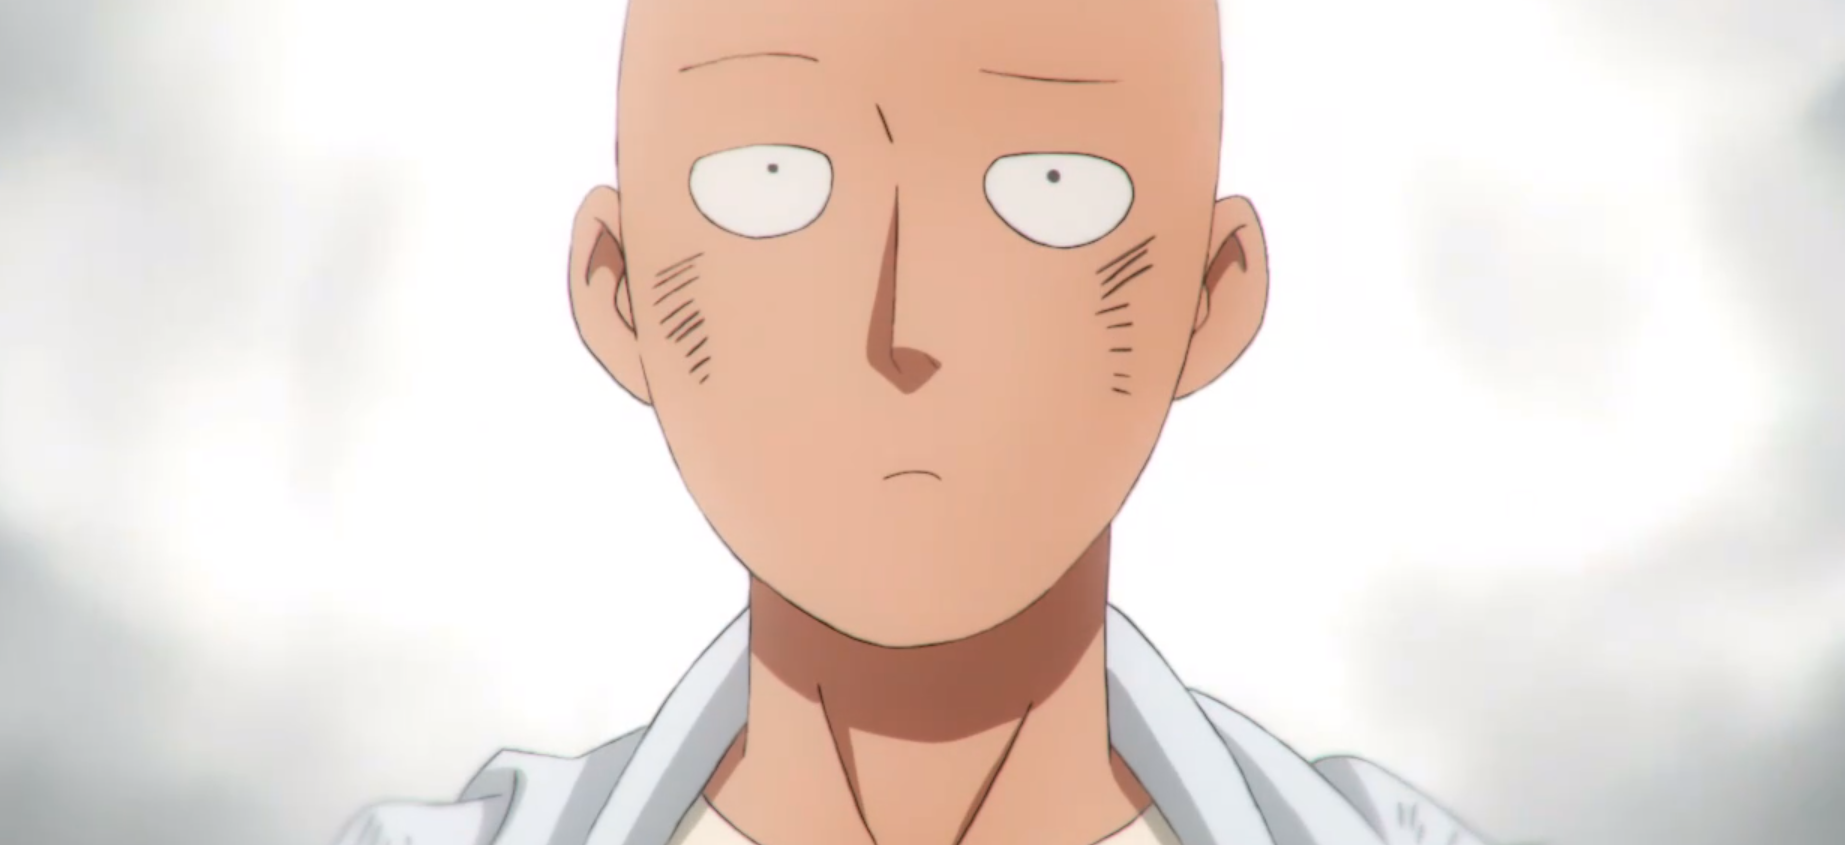 ⭕️(Anime): Frase épica de Saitama: Temporada/Season 2 ; Episode/Episodio 11  La frase se encuentra en el BONUS/EXTRA oficial y canon del Manga en físico  de One-Punch Man: “⭐️UN NUEVO ESTILO = A